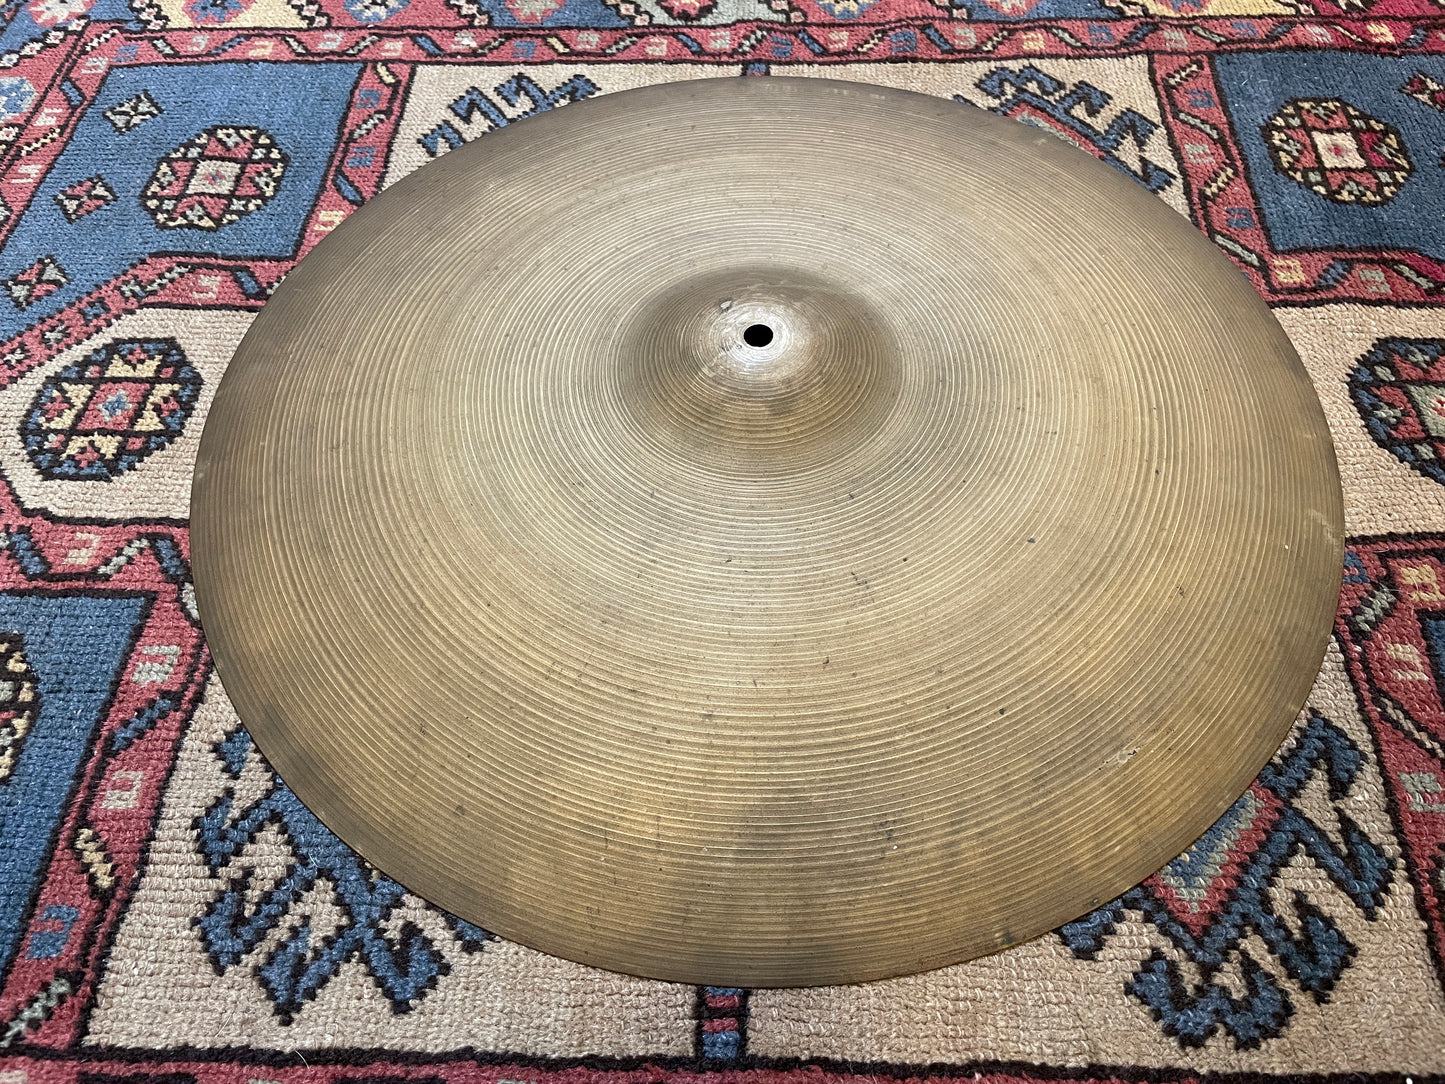 20" Zildjian A 1960s Ride Cymbal 1866g #839 *Video Demo*